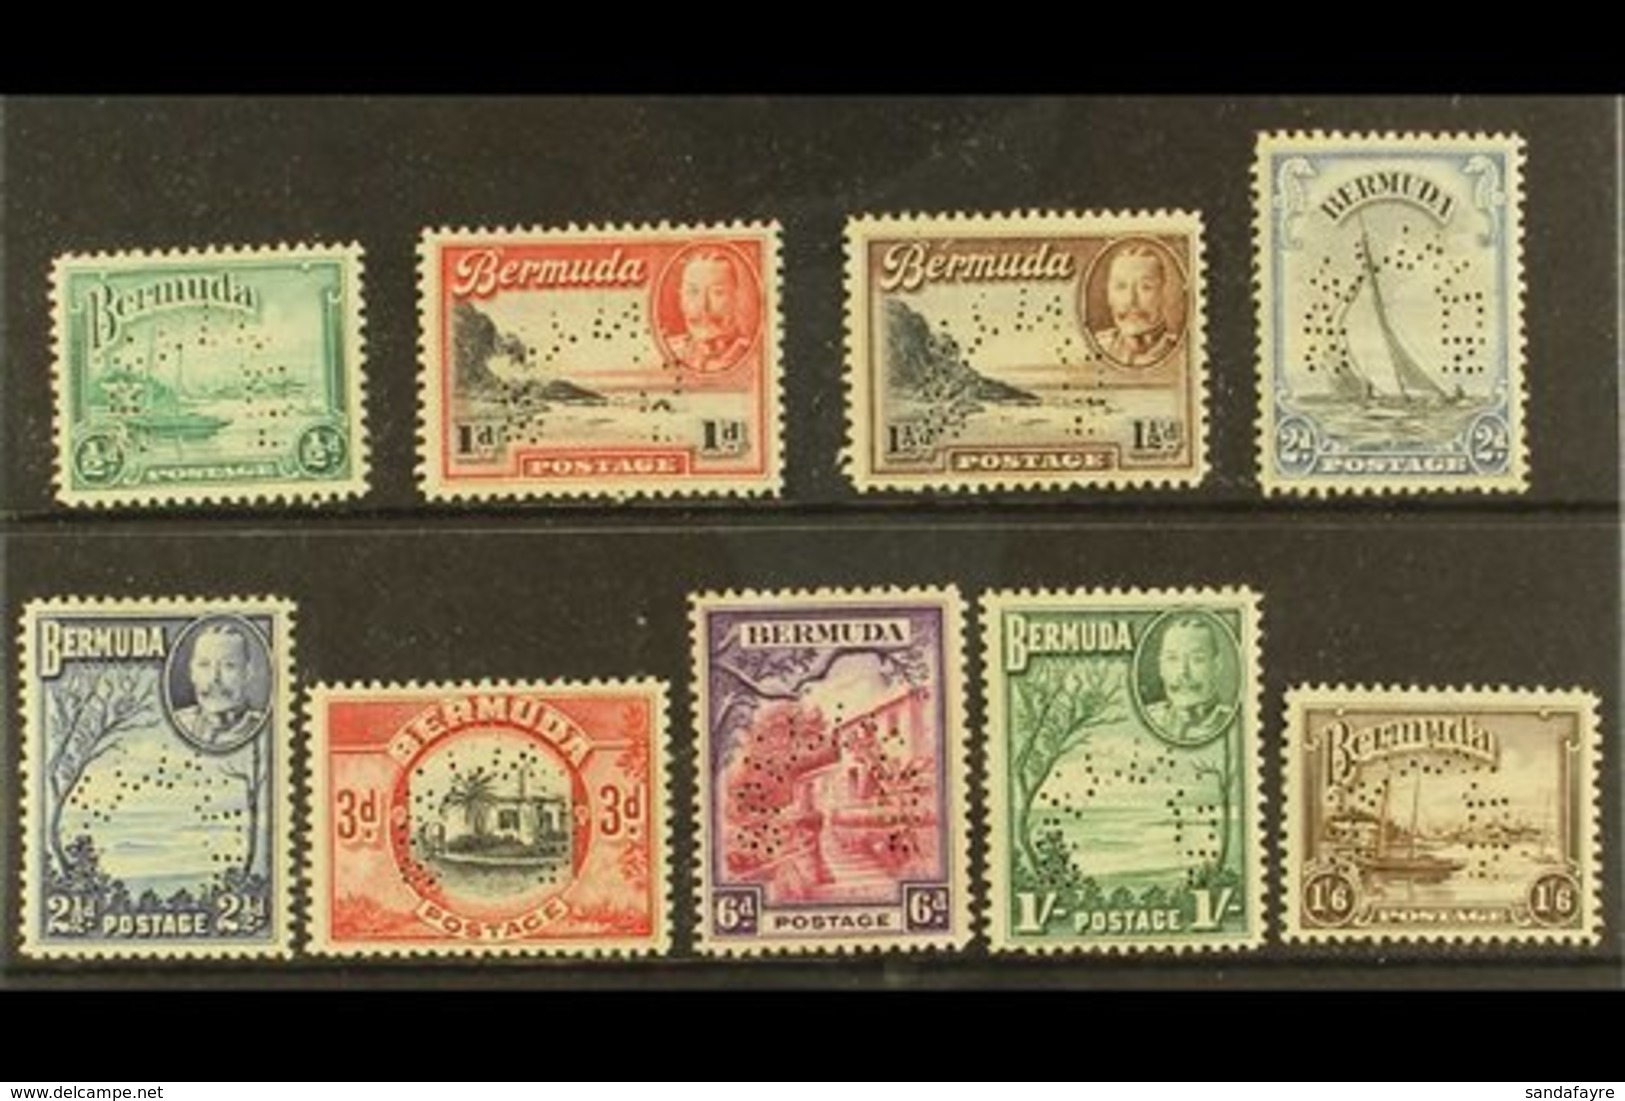 1936 Geo V Pictorial Set, Perf "Specimen", SG 98s/106s, Very Fine Mint, Large Part Og. (9 Stamps) For More Images, Pleas - Bermudes